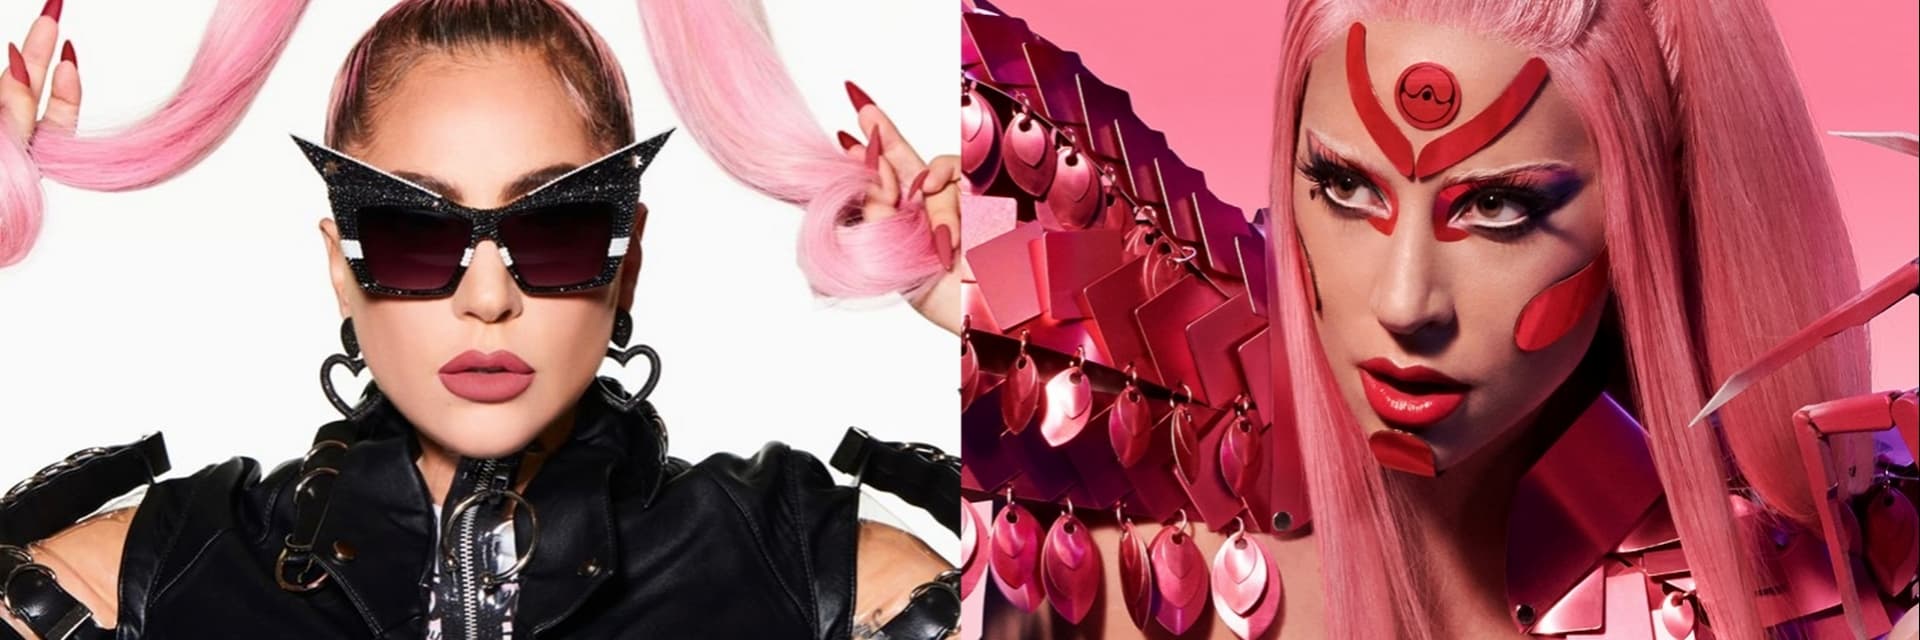 LADY GAGA 宣告新輯 4 月駕到 粉紅色外星女戰士帥氣造型 秒衝全球 60 國排行冠軍